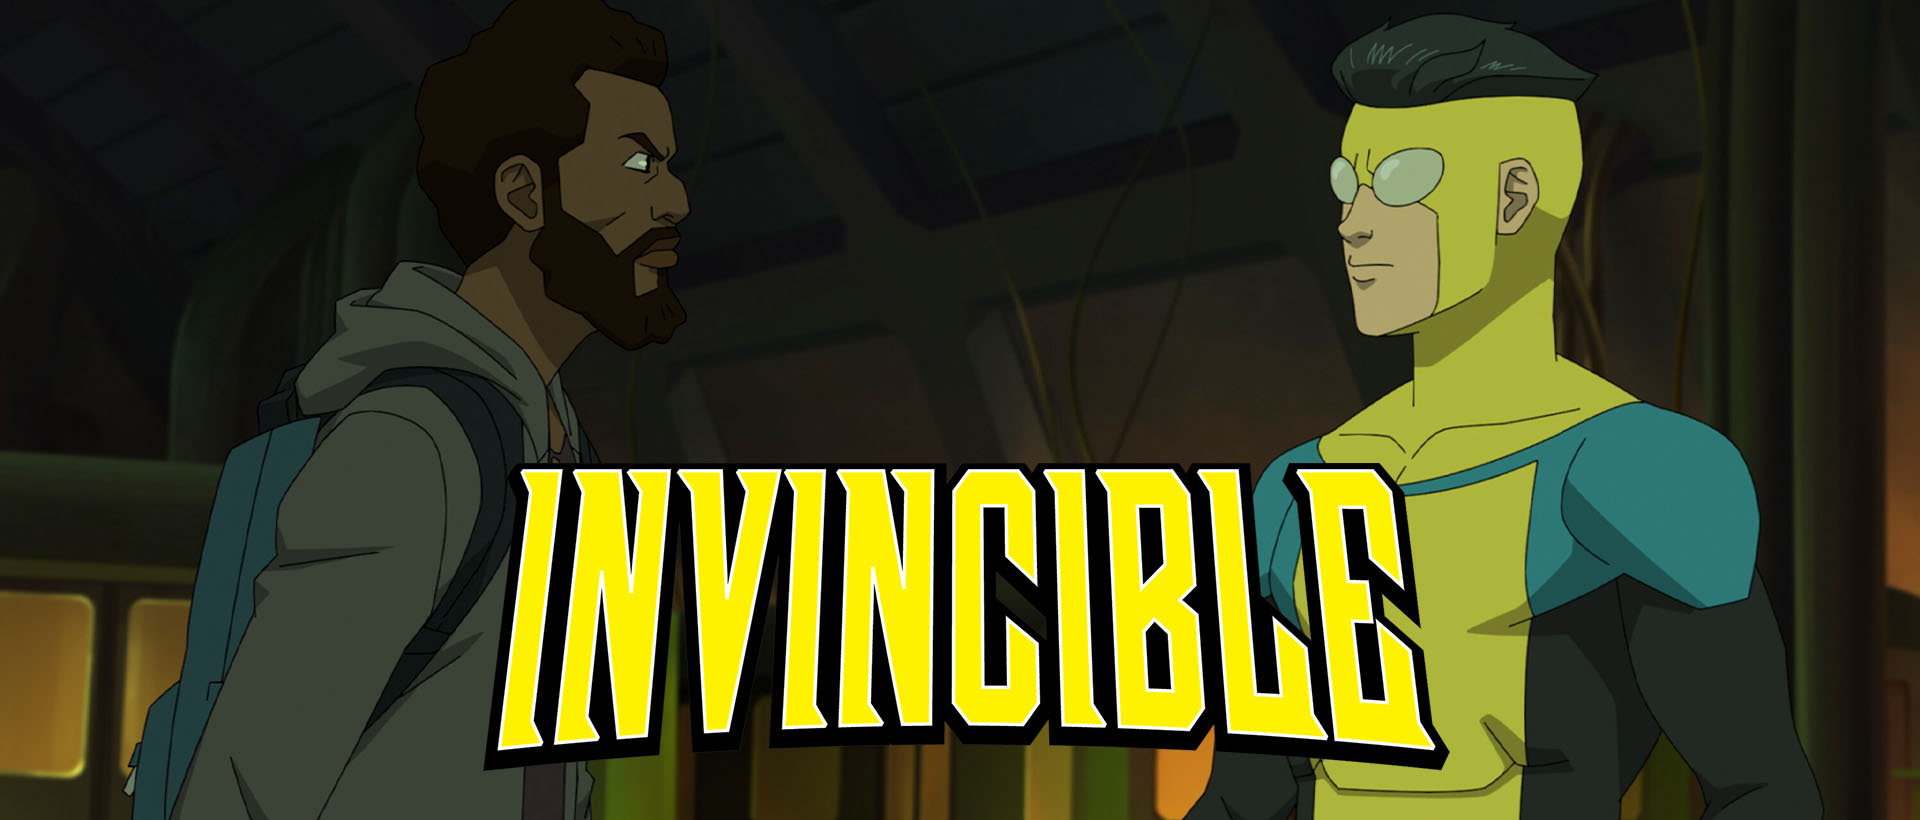 Invincible Season 2 Episode 3 REVIEW 